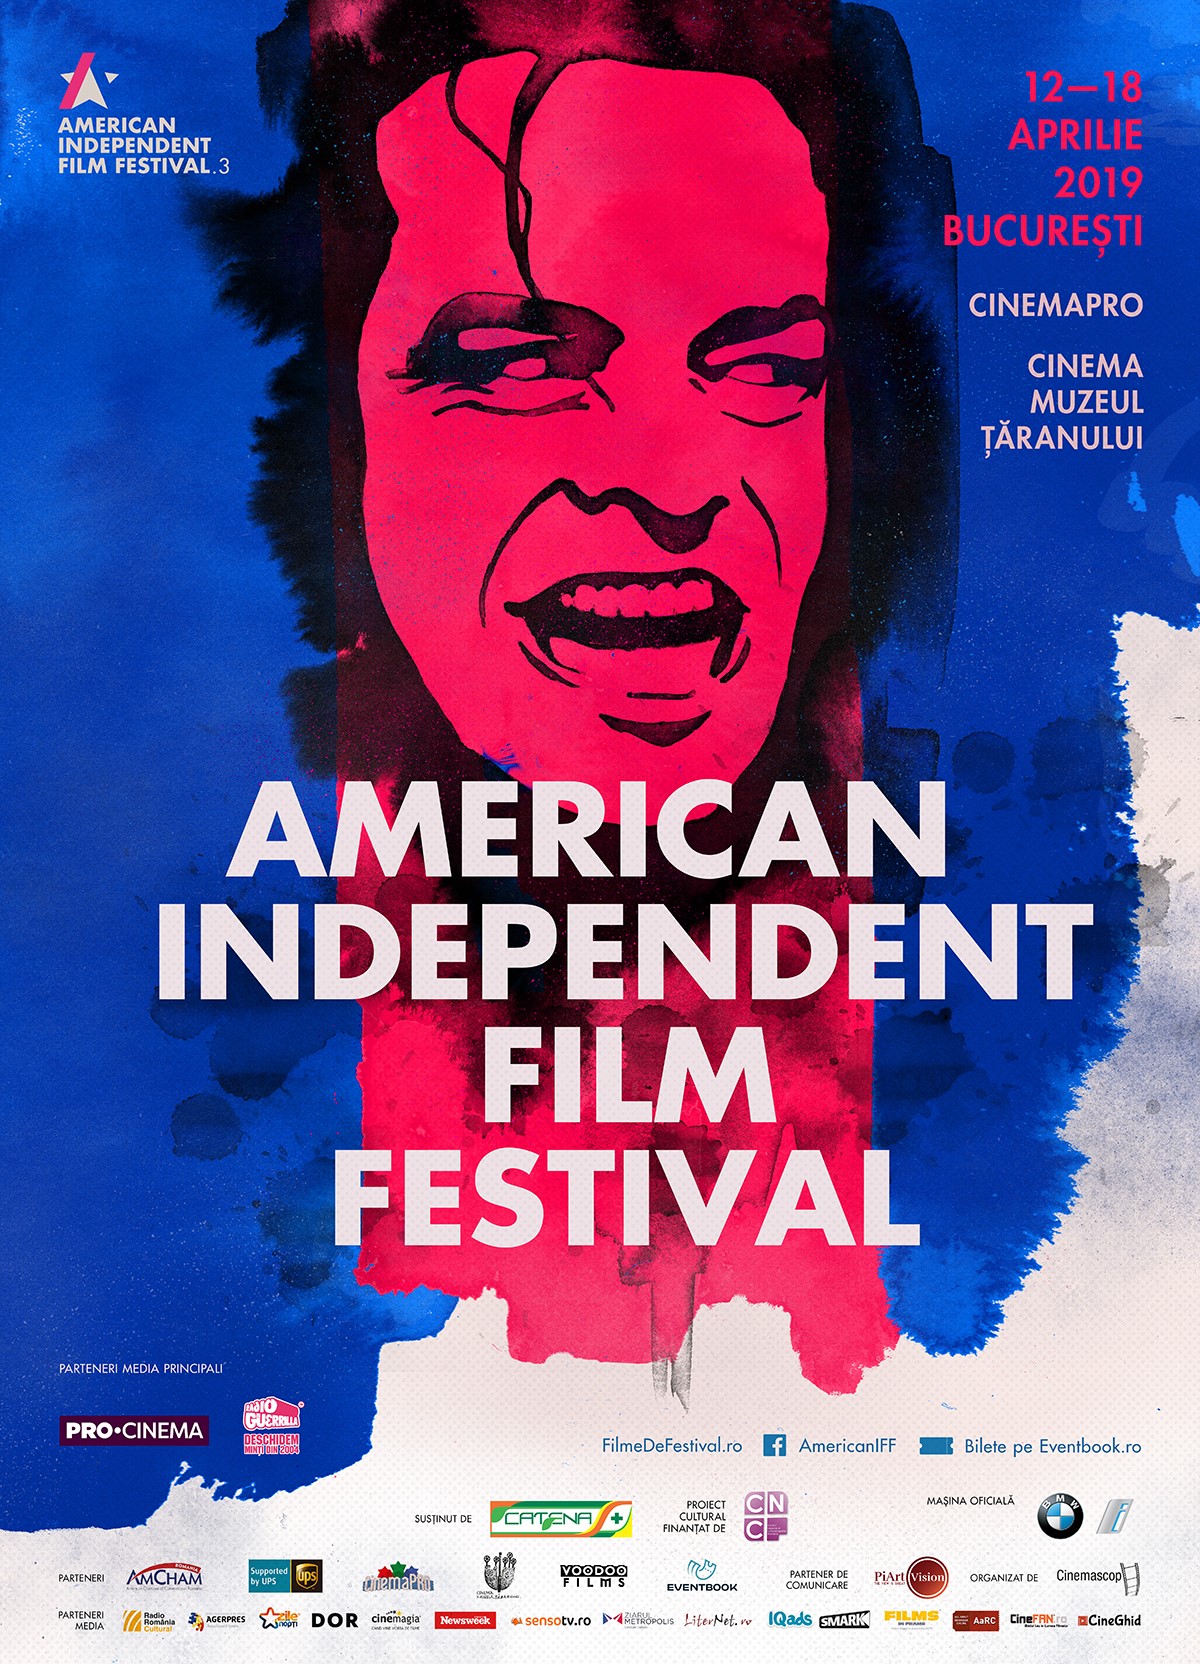 CATENA sustine American Independent Film Festival 2019 